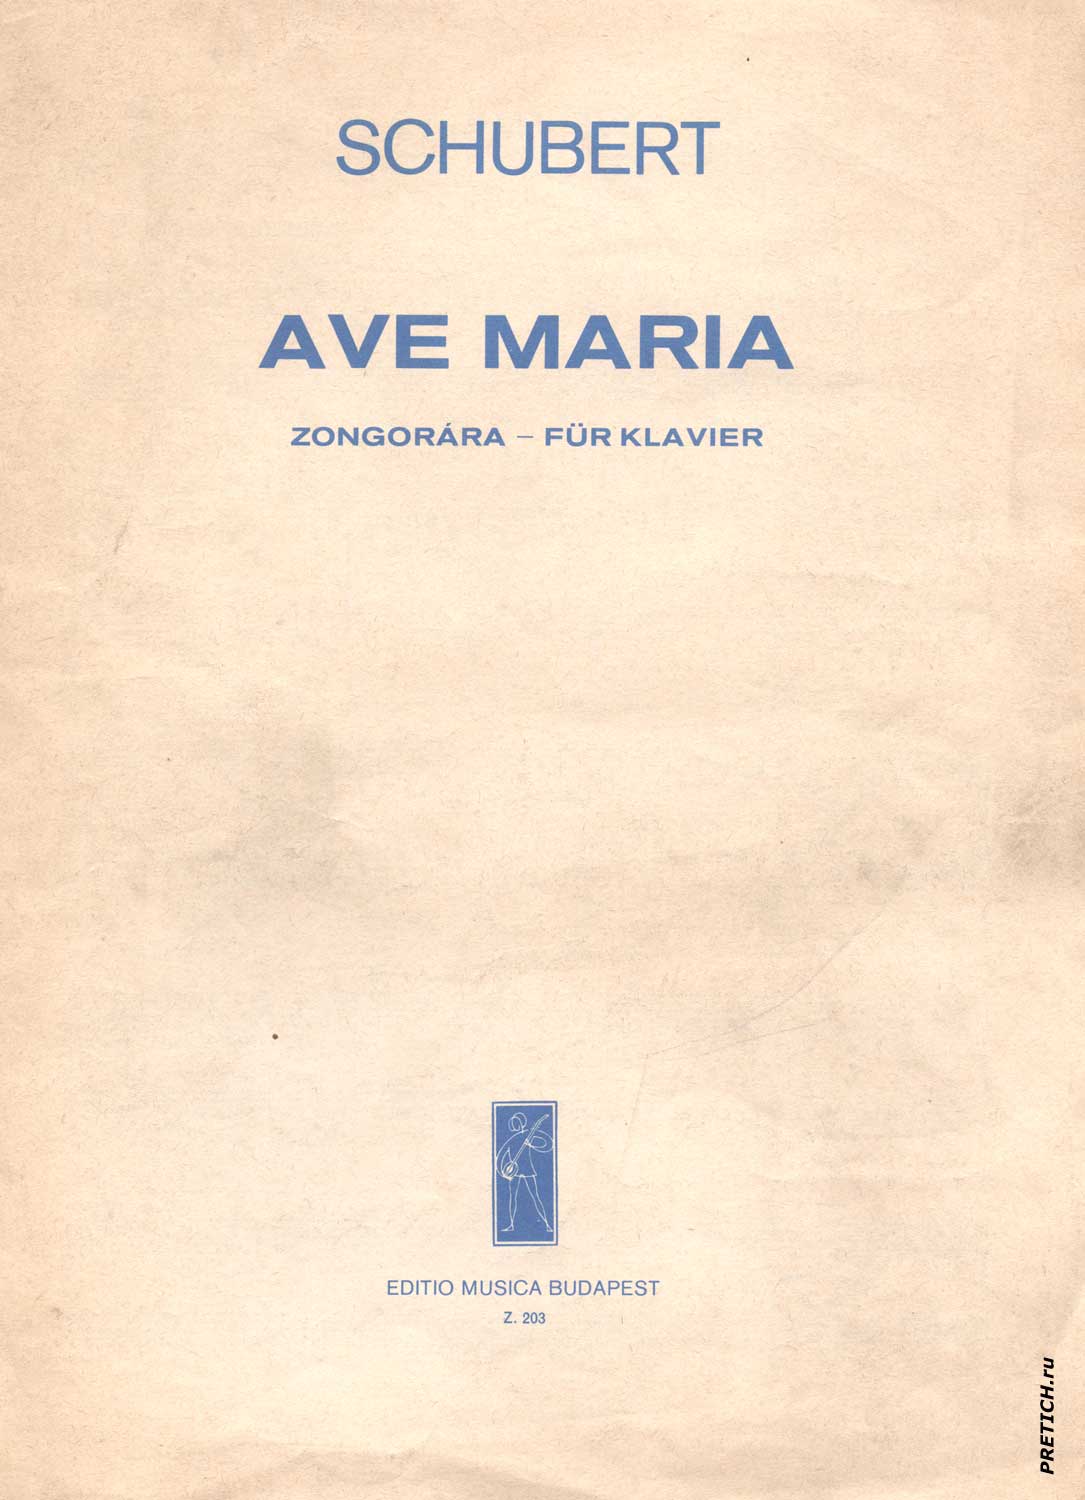 Schubert AVE MARIA Zongorara - fur klavier ноты, скачай и распечатай